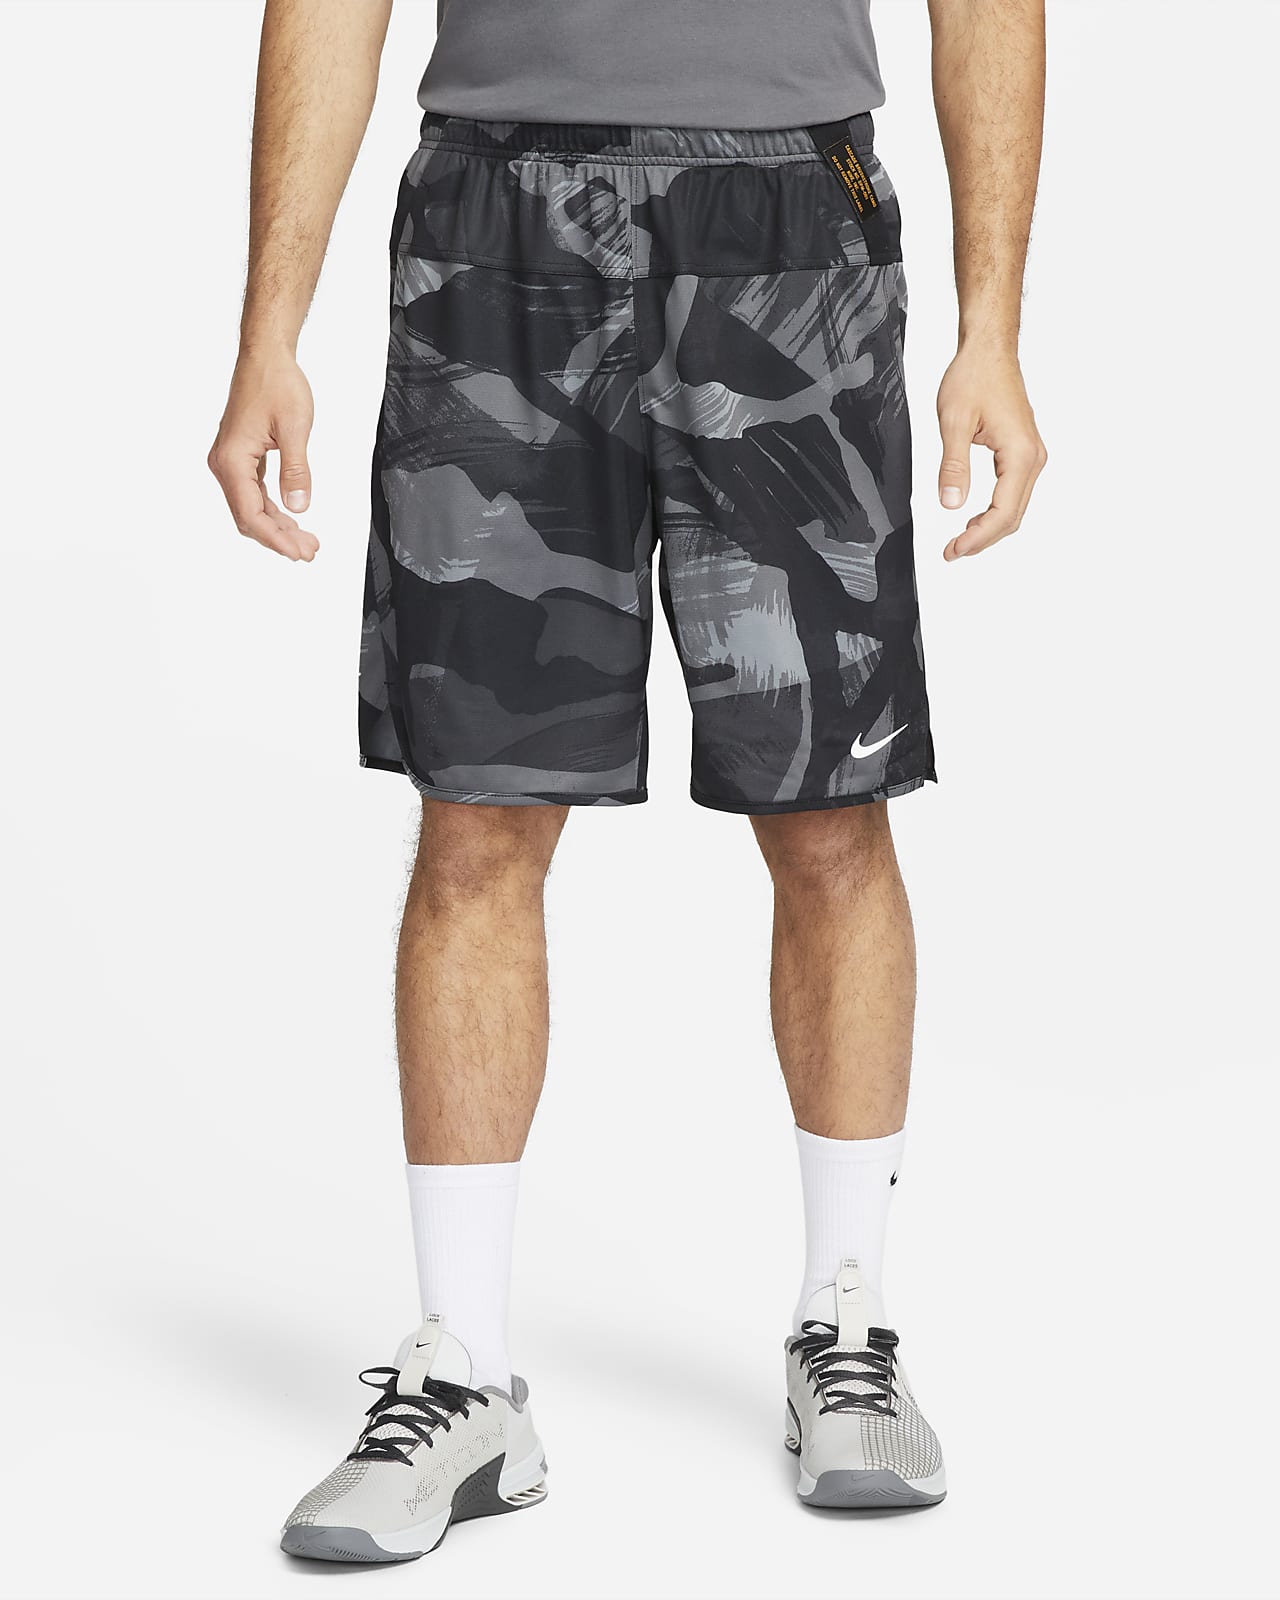 ナイキ バスケットボール ショートパンツ 海外モデル メンズ グラフィック ショーツ ハーフパンツ  Mens NIKE THROWBACK Nike